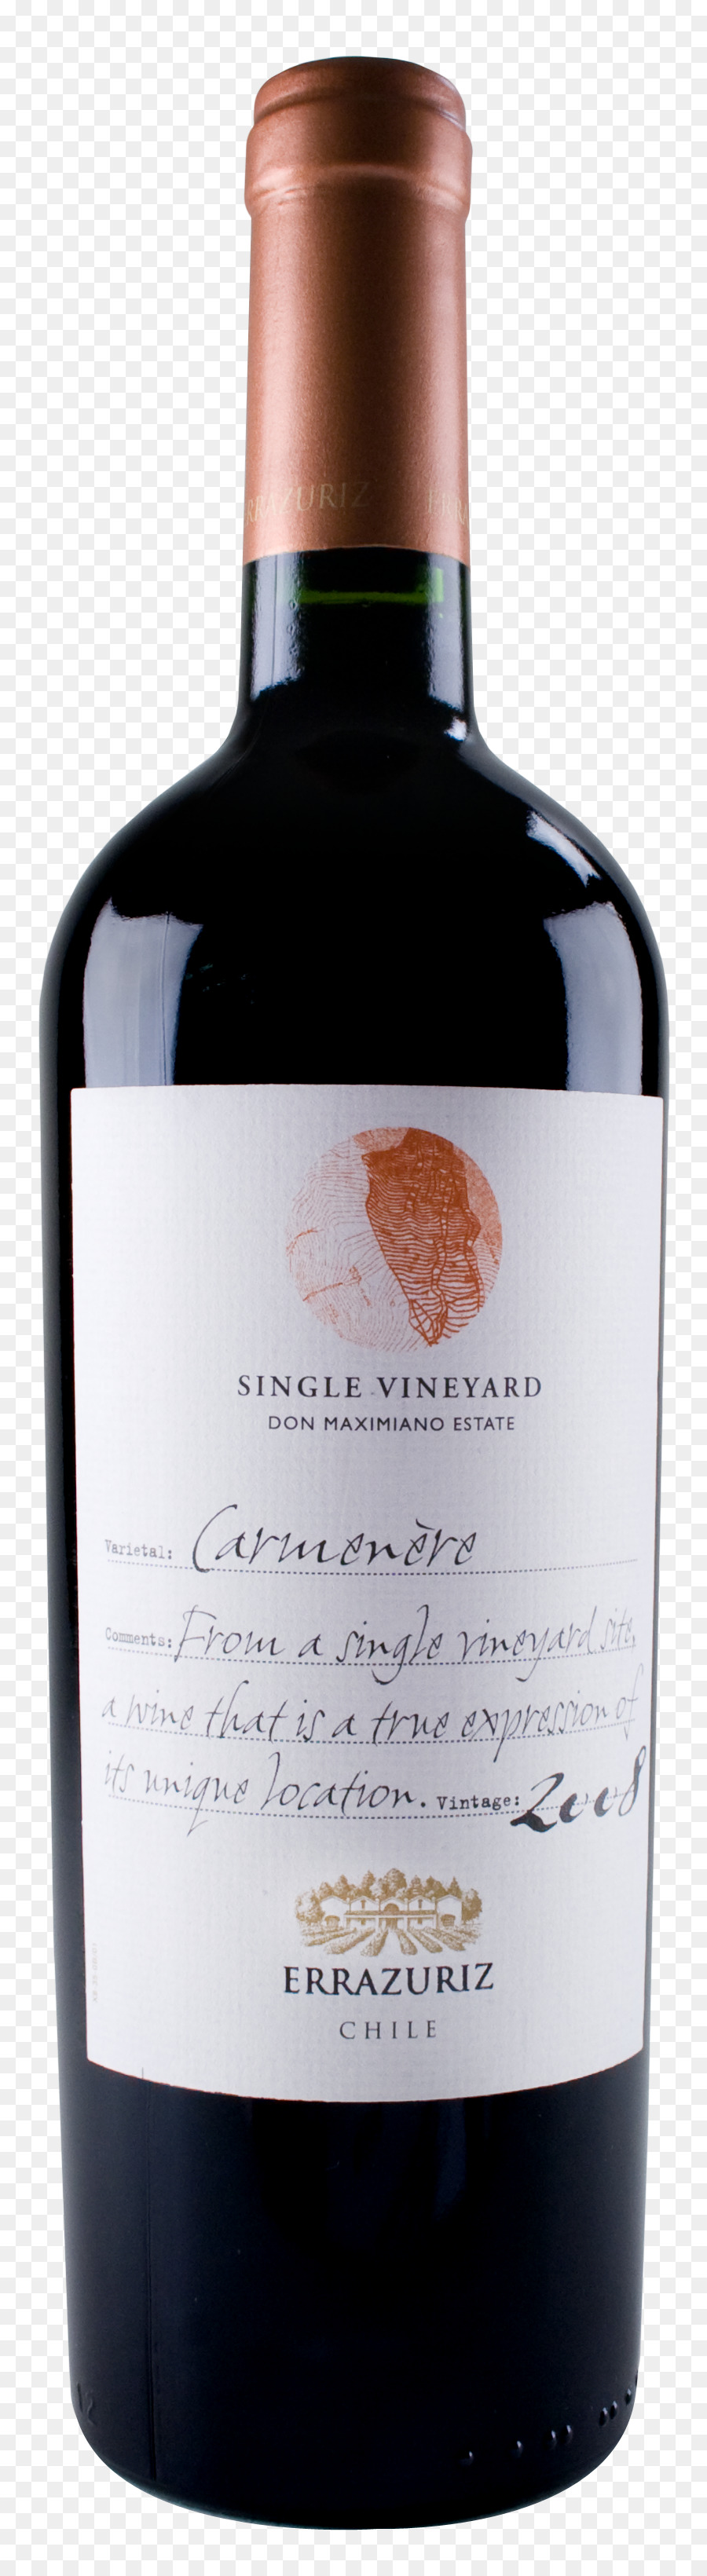 Cabernet Sauvignon von Bronco Wine Company Carmenere Napa Valley AVA - Wein